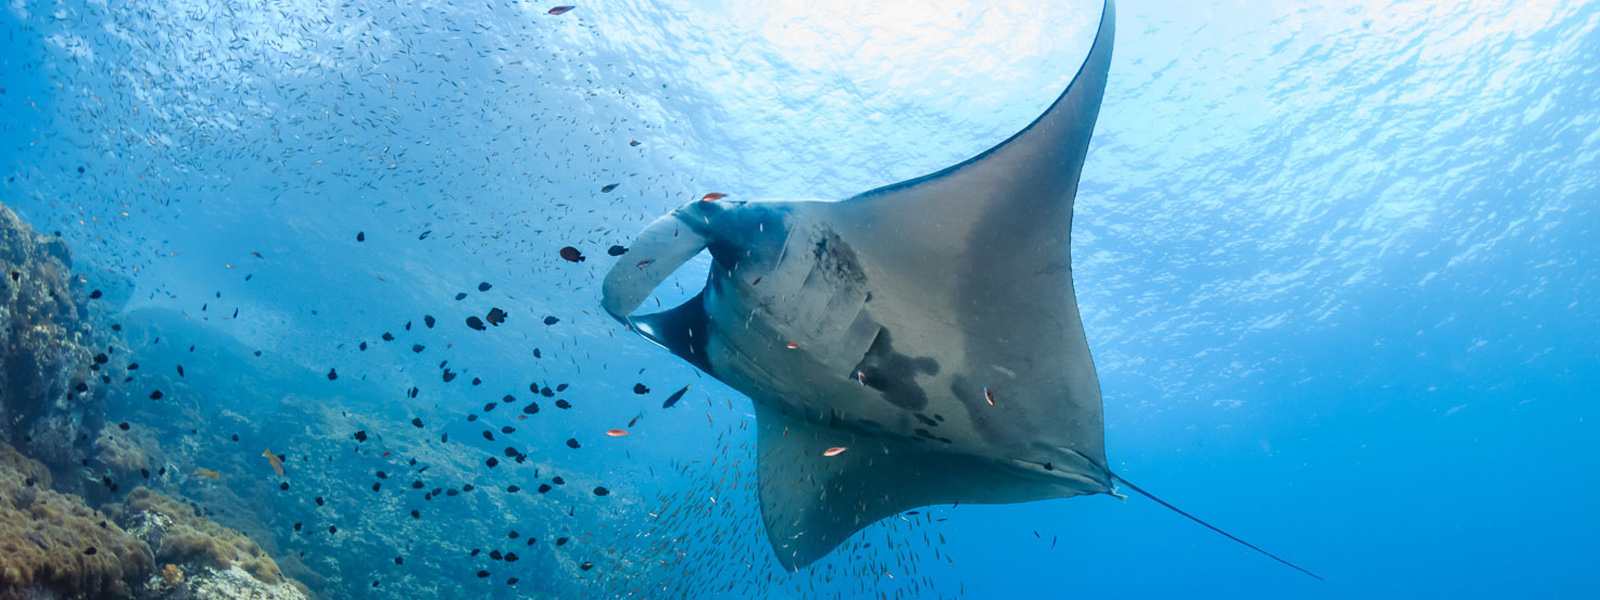 Why do manta rays move their cephalic lobes?